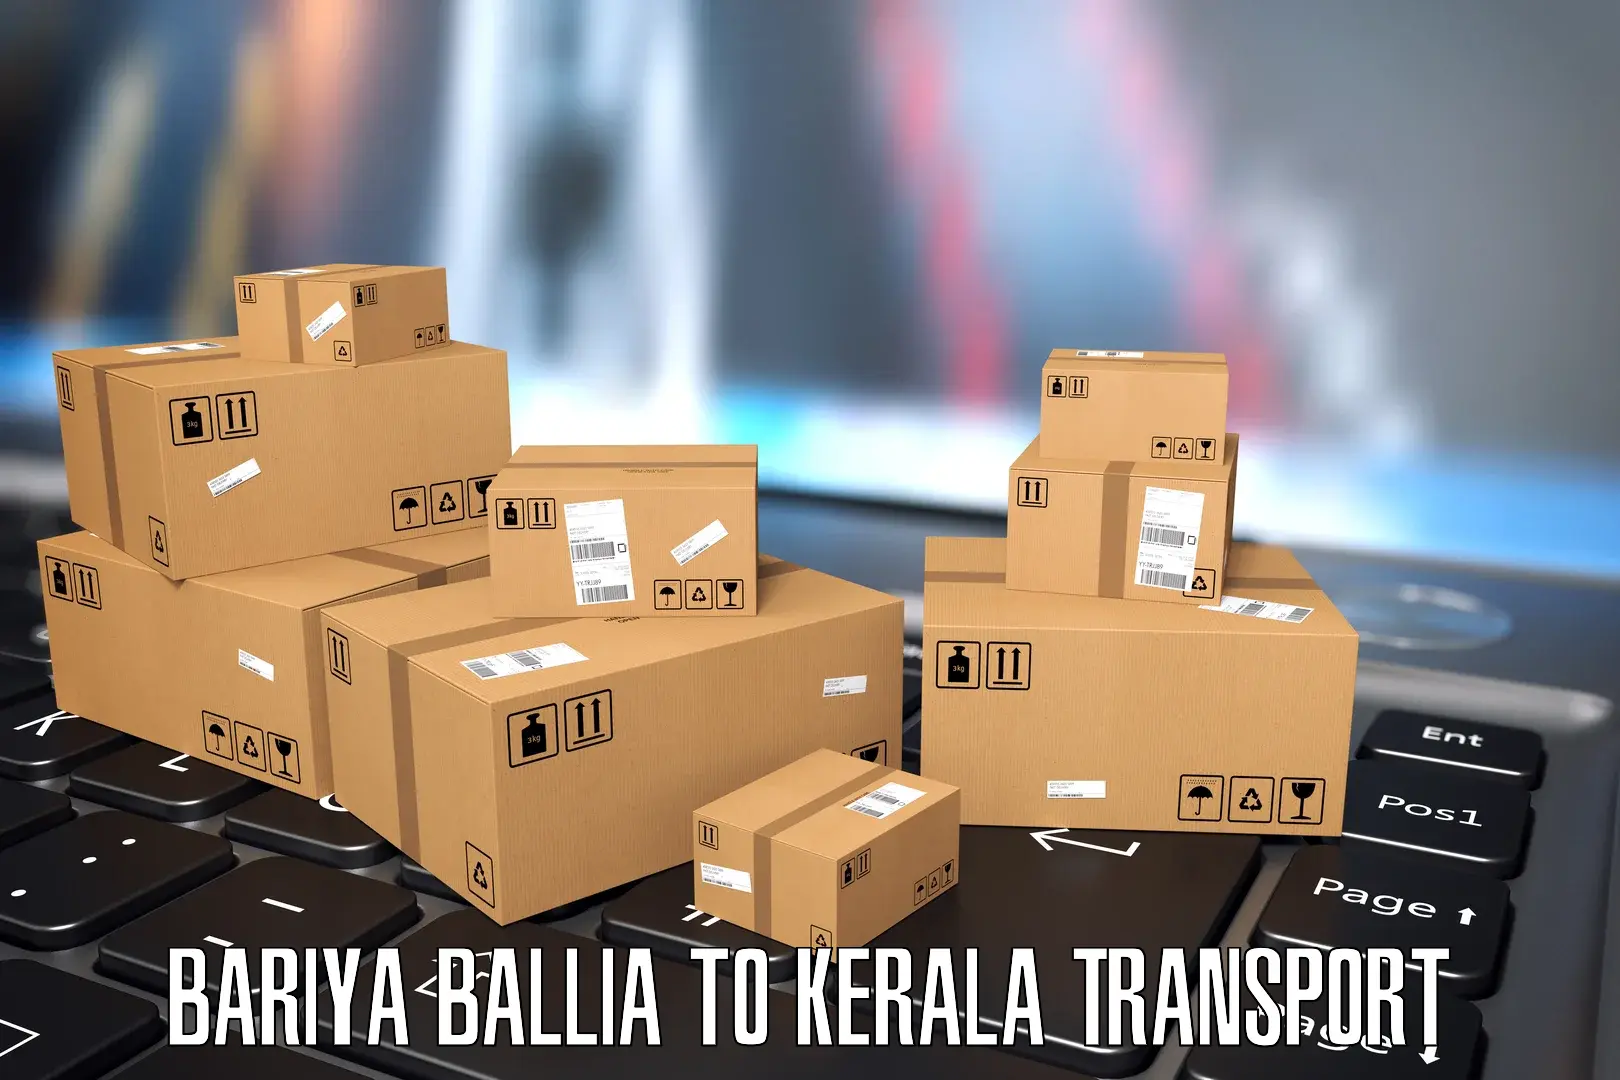 Nearest transport service Bariya Ballia to Panayathamparamba